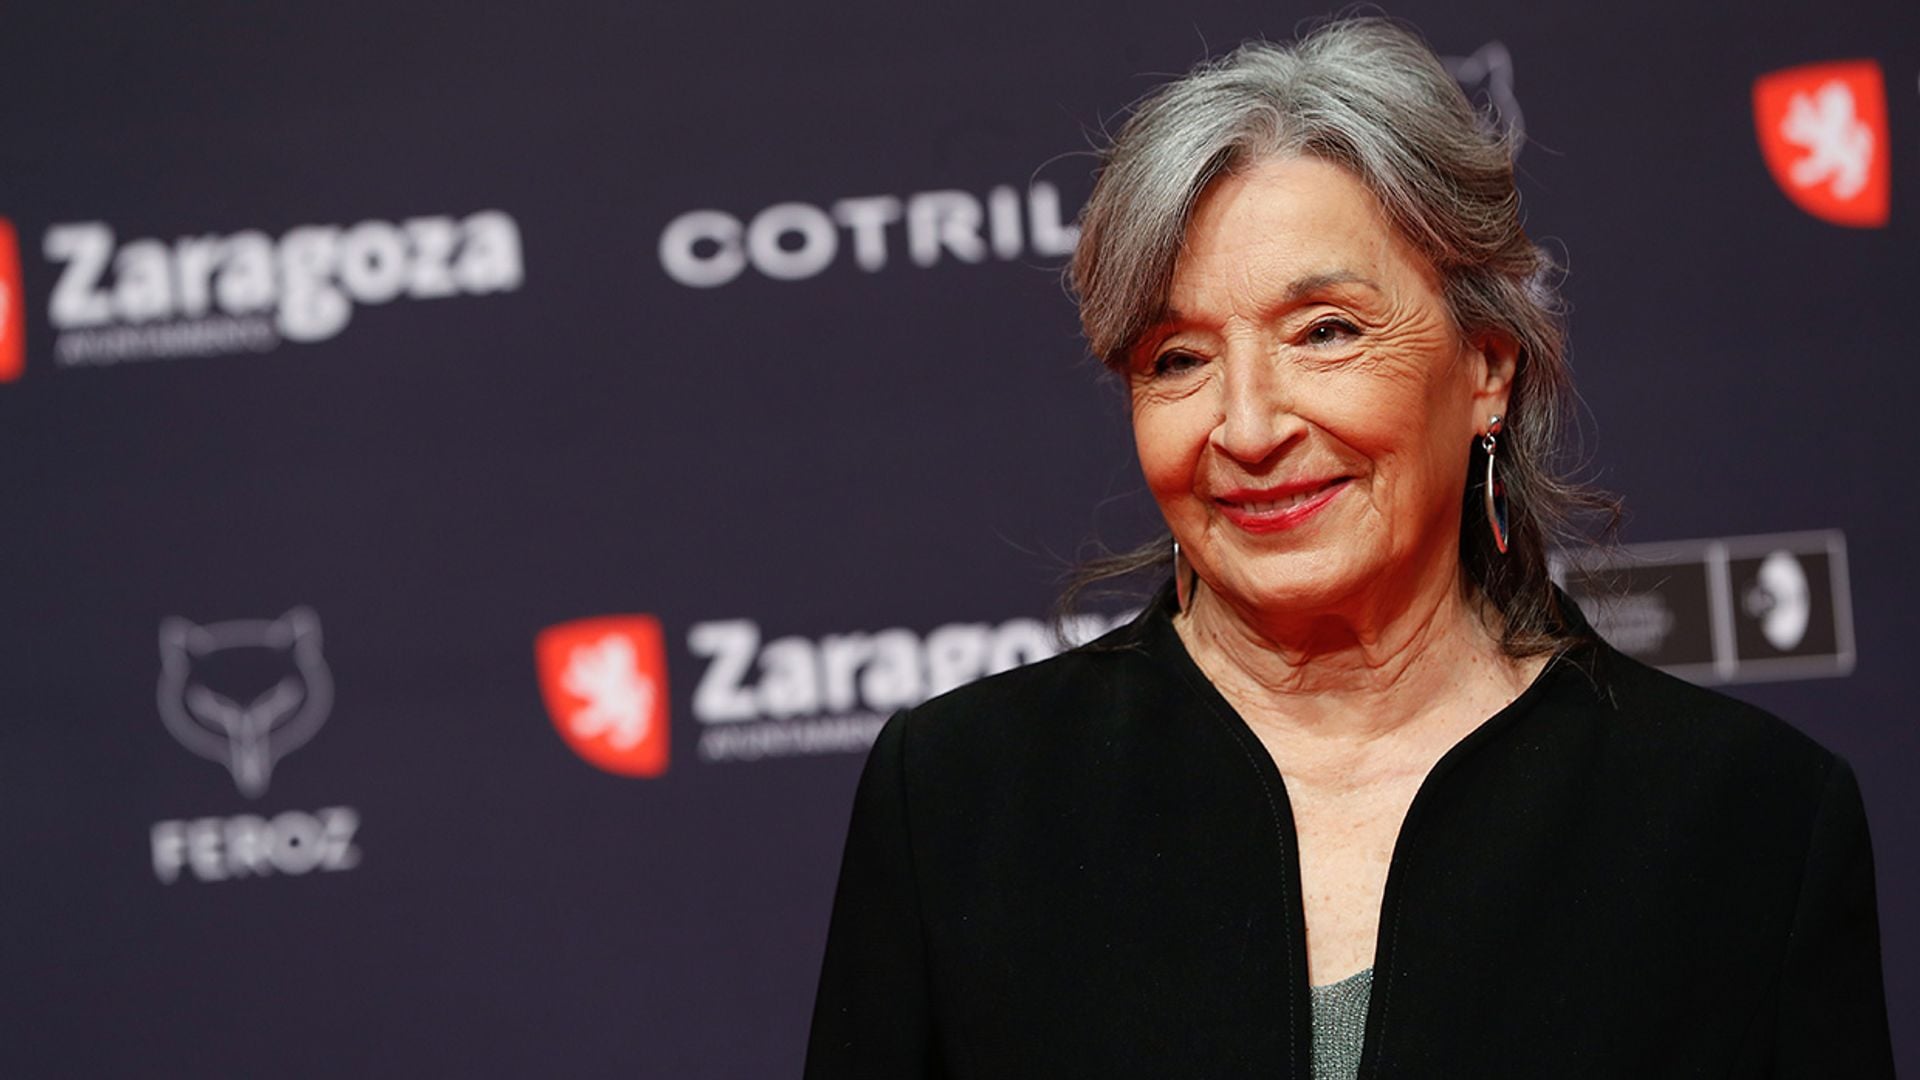 Petra Martínez, de 'La que se avecina' a ser una de las favoritas para lograr el Goya con 77 años